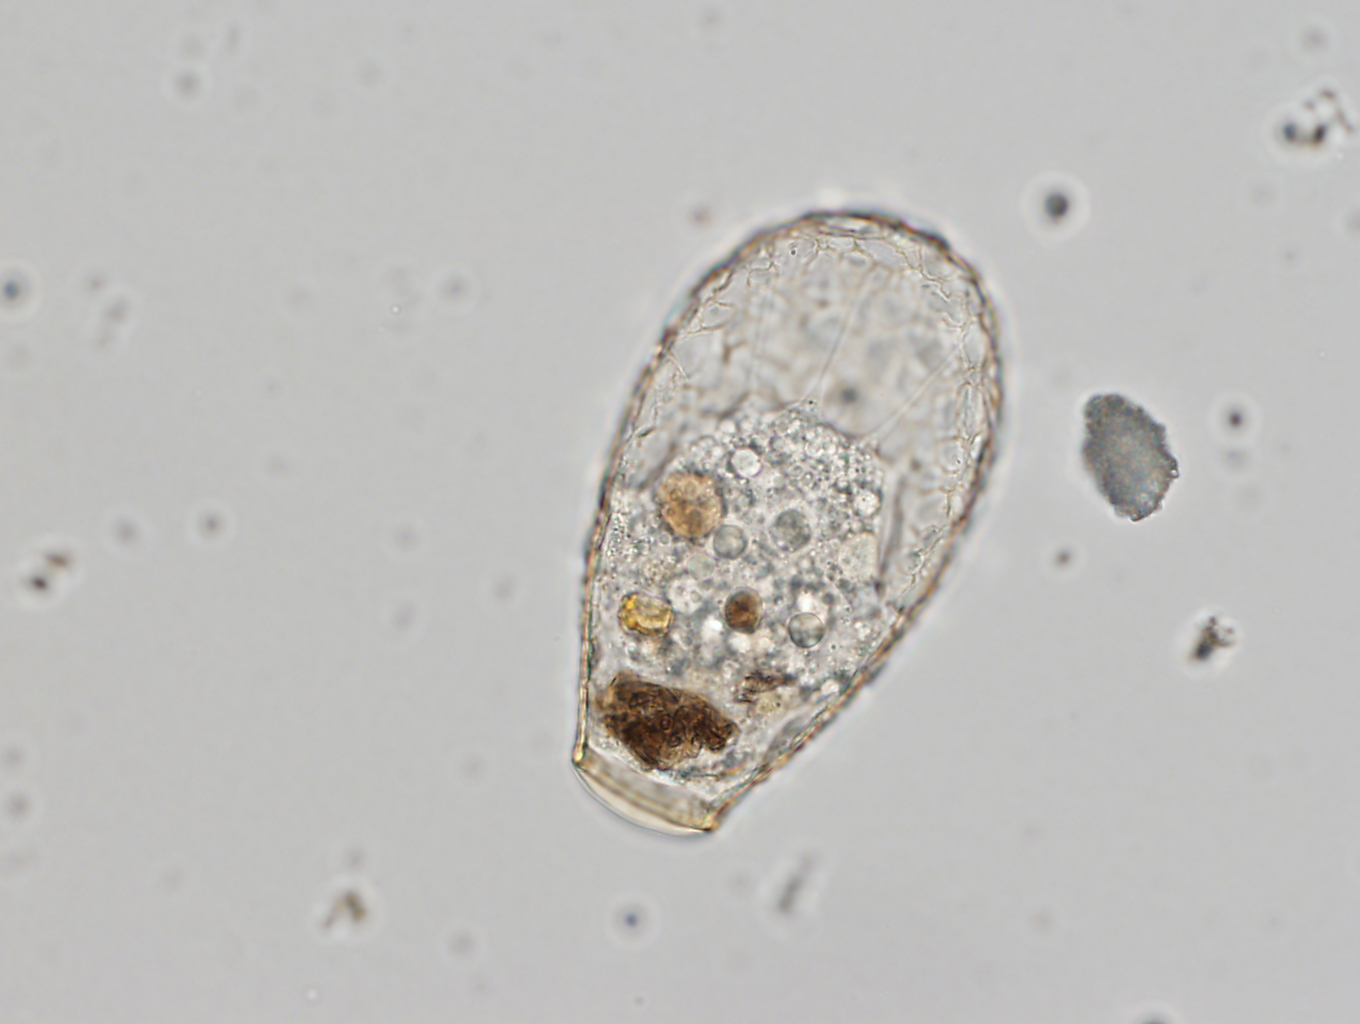 Nebela sp., un protista común en suelos forestales. Se alimenta de otros eucariotas, hongos y animales microscópicos como gusanos nematodos. Foto: Quentin Blandenier.